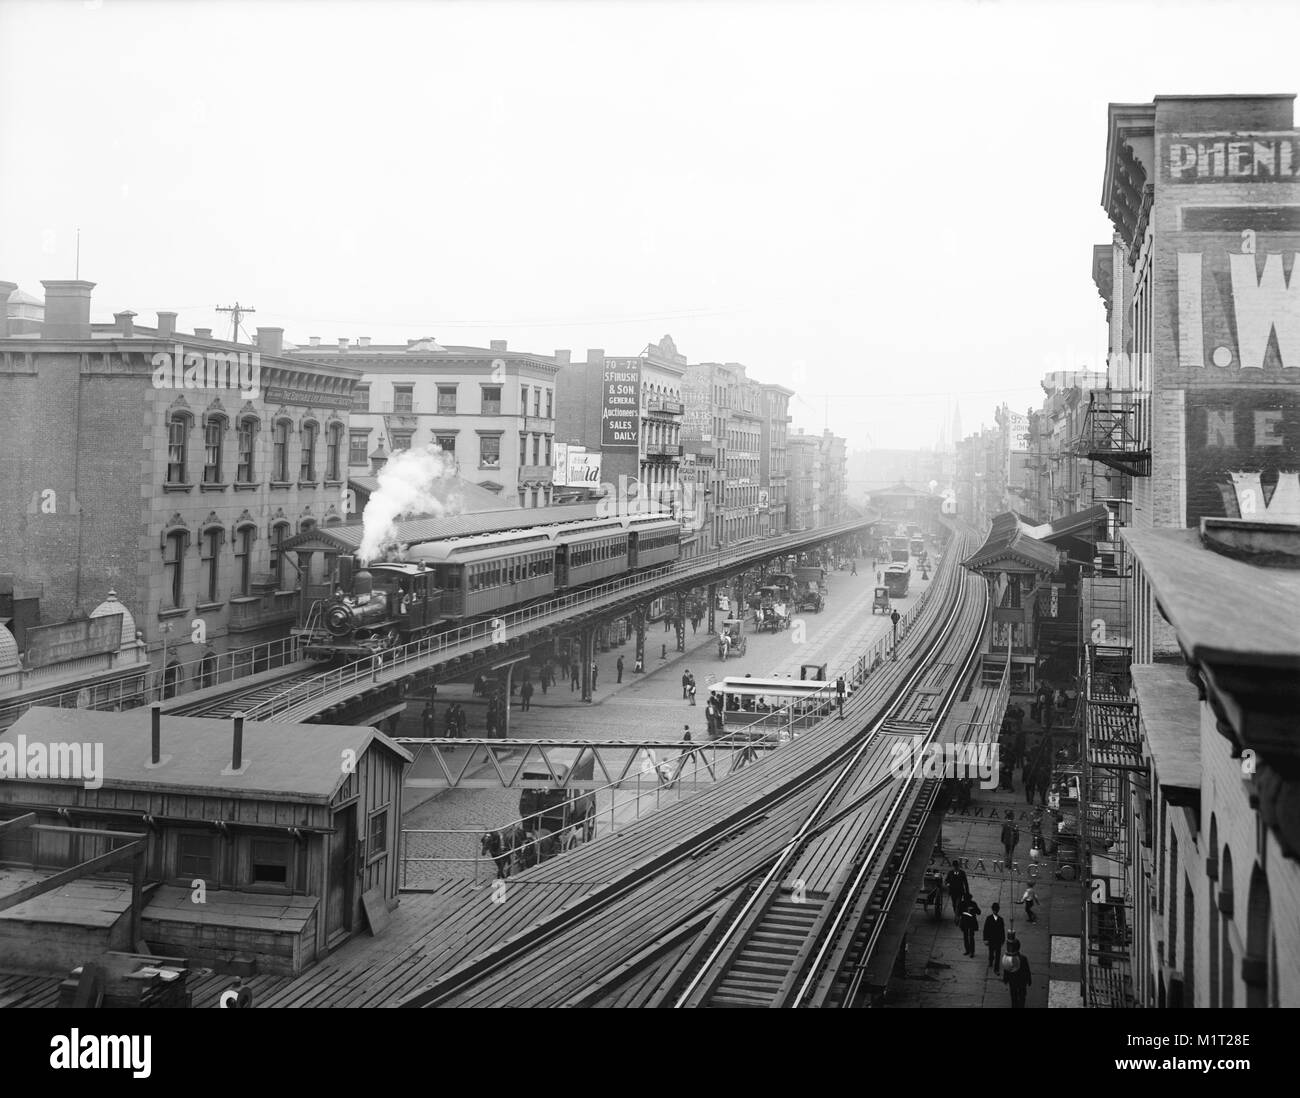 Bowery Near Grand Street, New York City, New York, USA, Detroit Publishing Company, 1900 Stock Photo